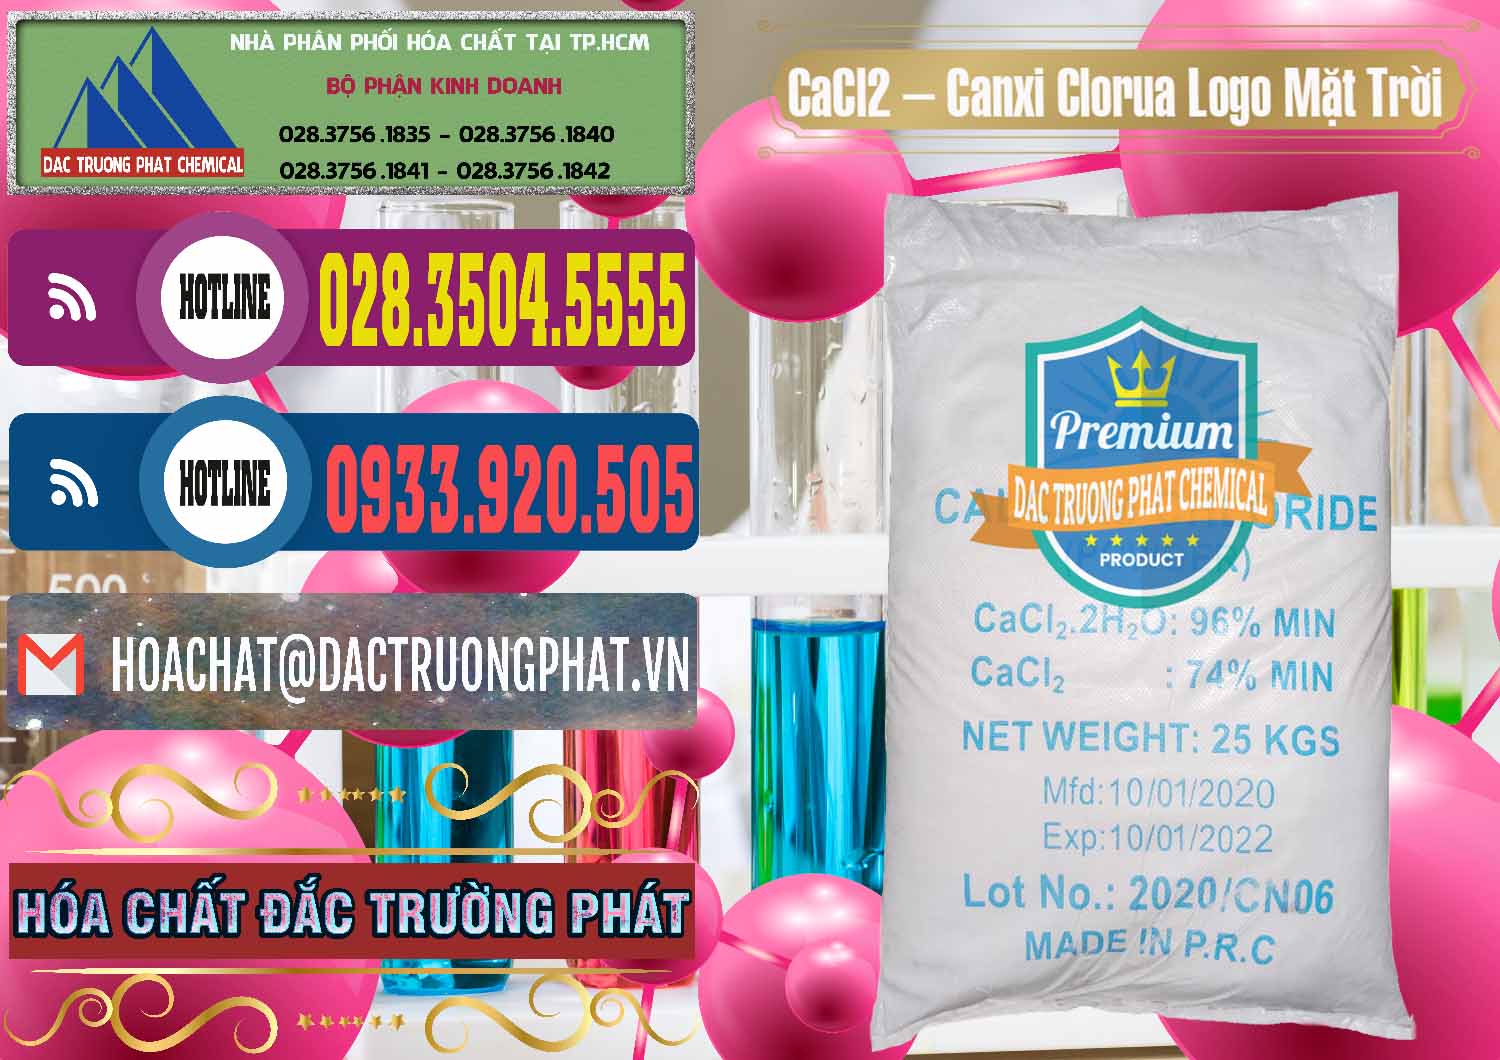 Đơn vị chuyên nhập khẩu và bán CaCl2 – Canxi Clorua 96% Logo Mặt Trời Trung Quốc China - 0041 - Chuyên phân phối & nhập khẩu hóa chất tại TP.HCM - muabanhoachat.com.vn